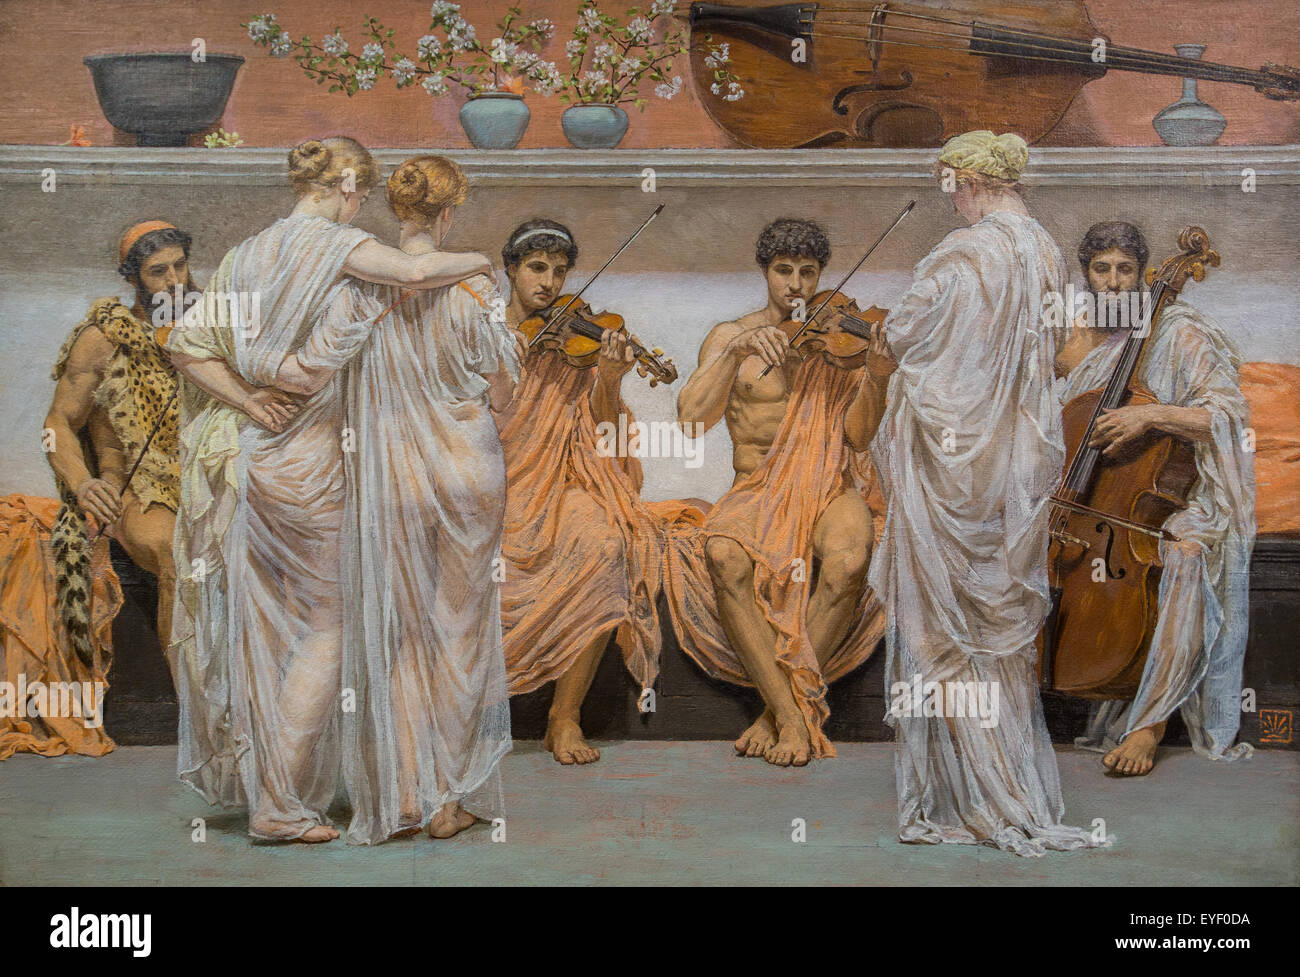 Das Quartett, das Maler-Hommage an die Kunst der Musik 01.08.2014 - Sammlung des 19. Jahrhunderts Stockfoto